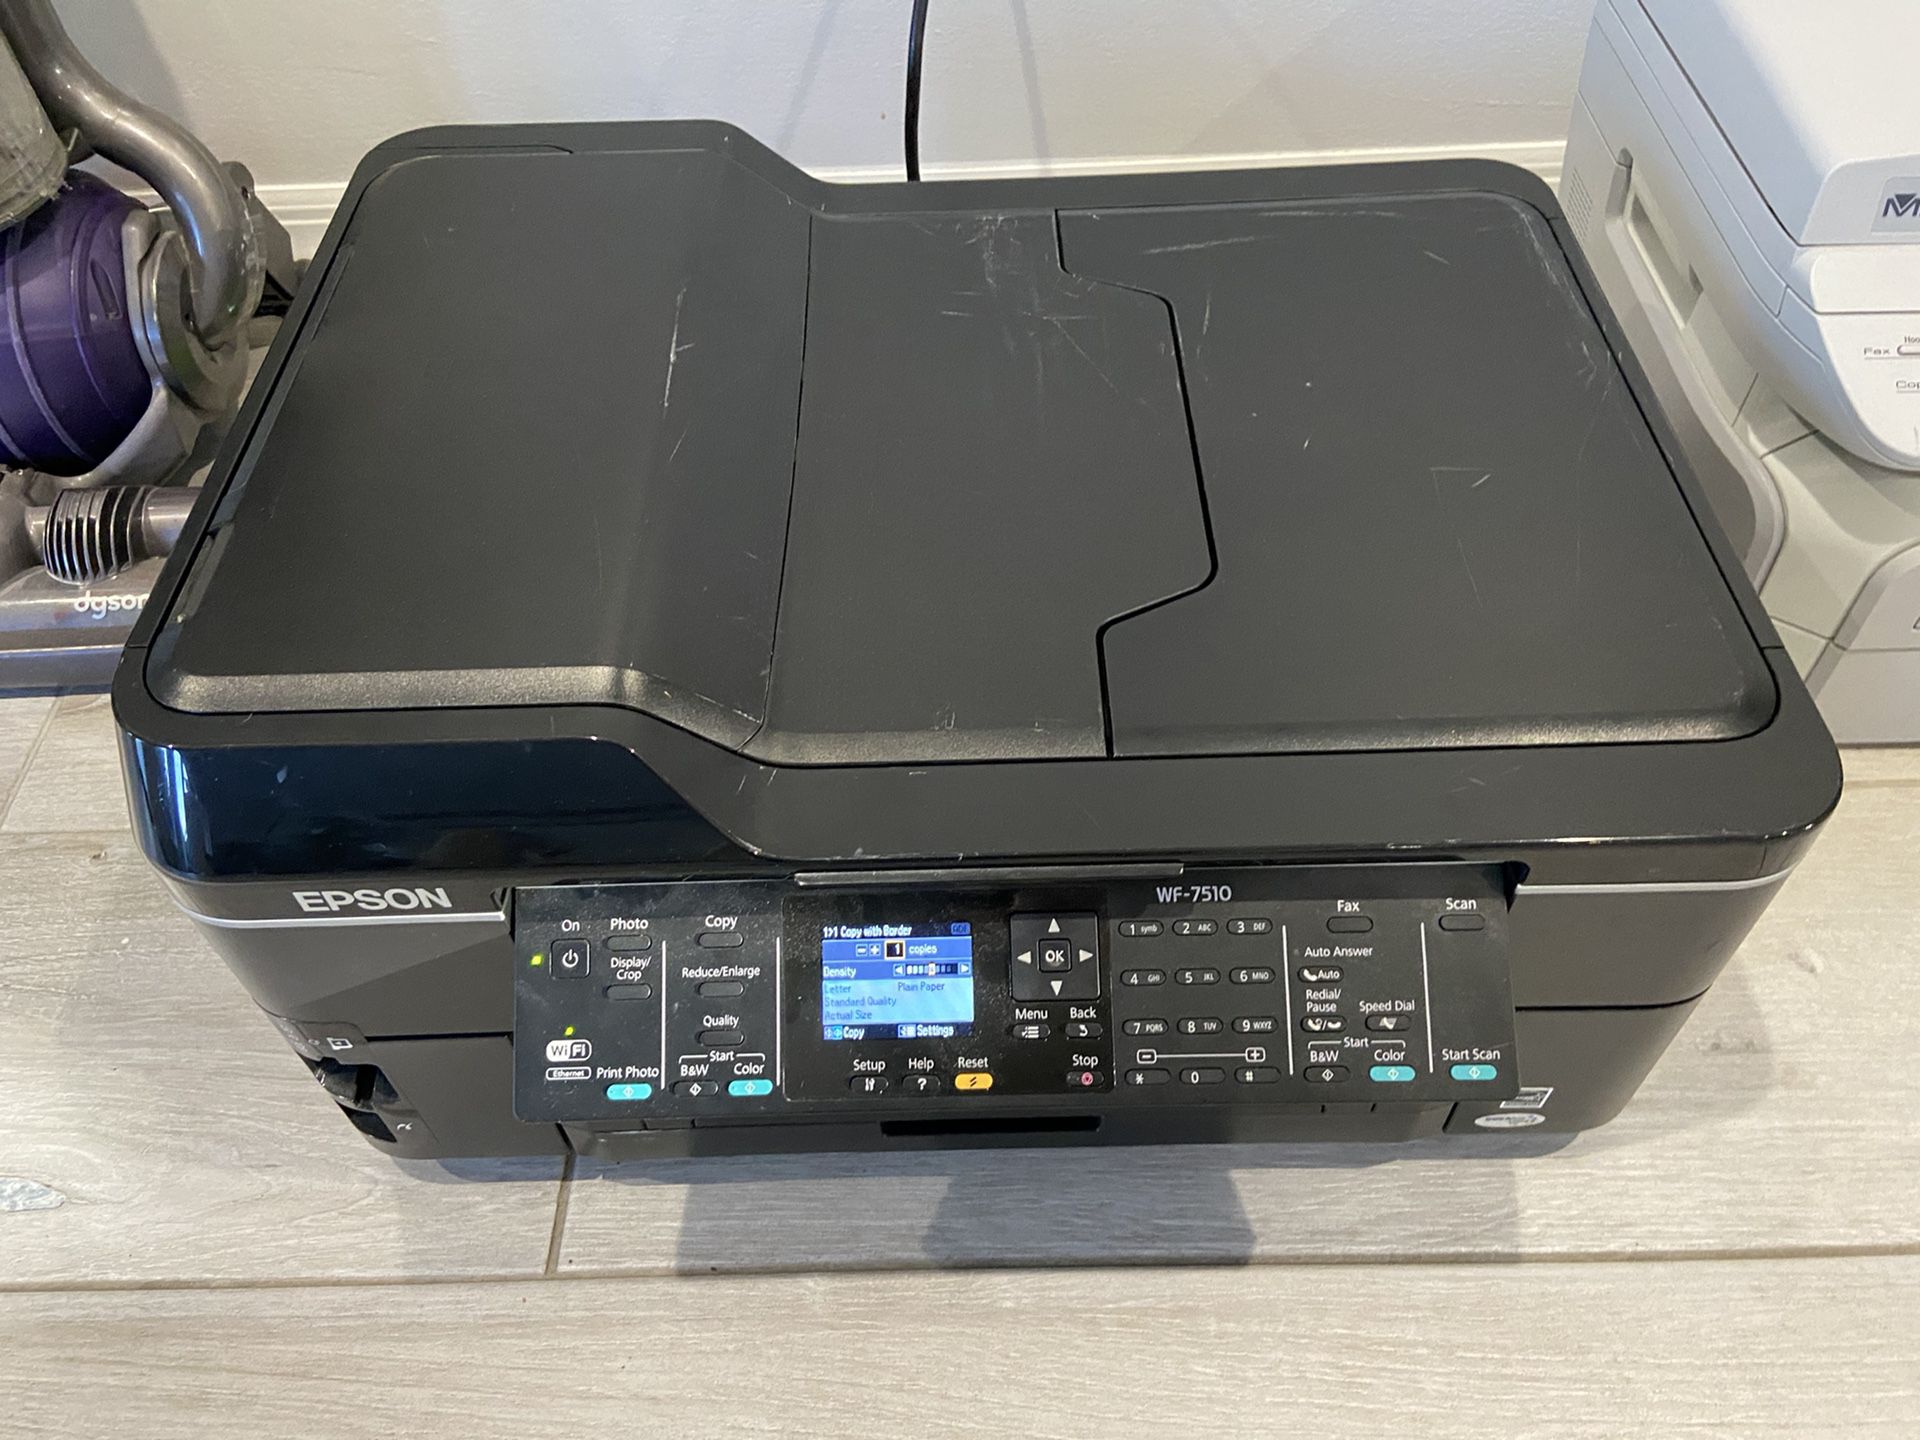 Epson WF-7510 Printer 🖨